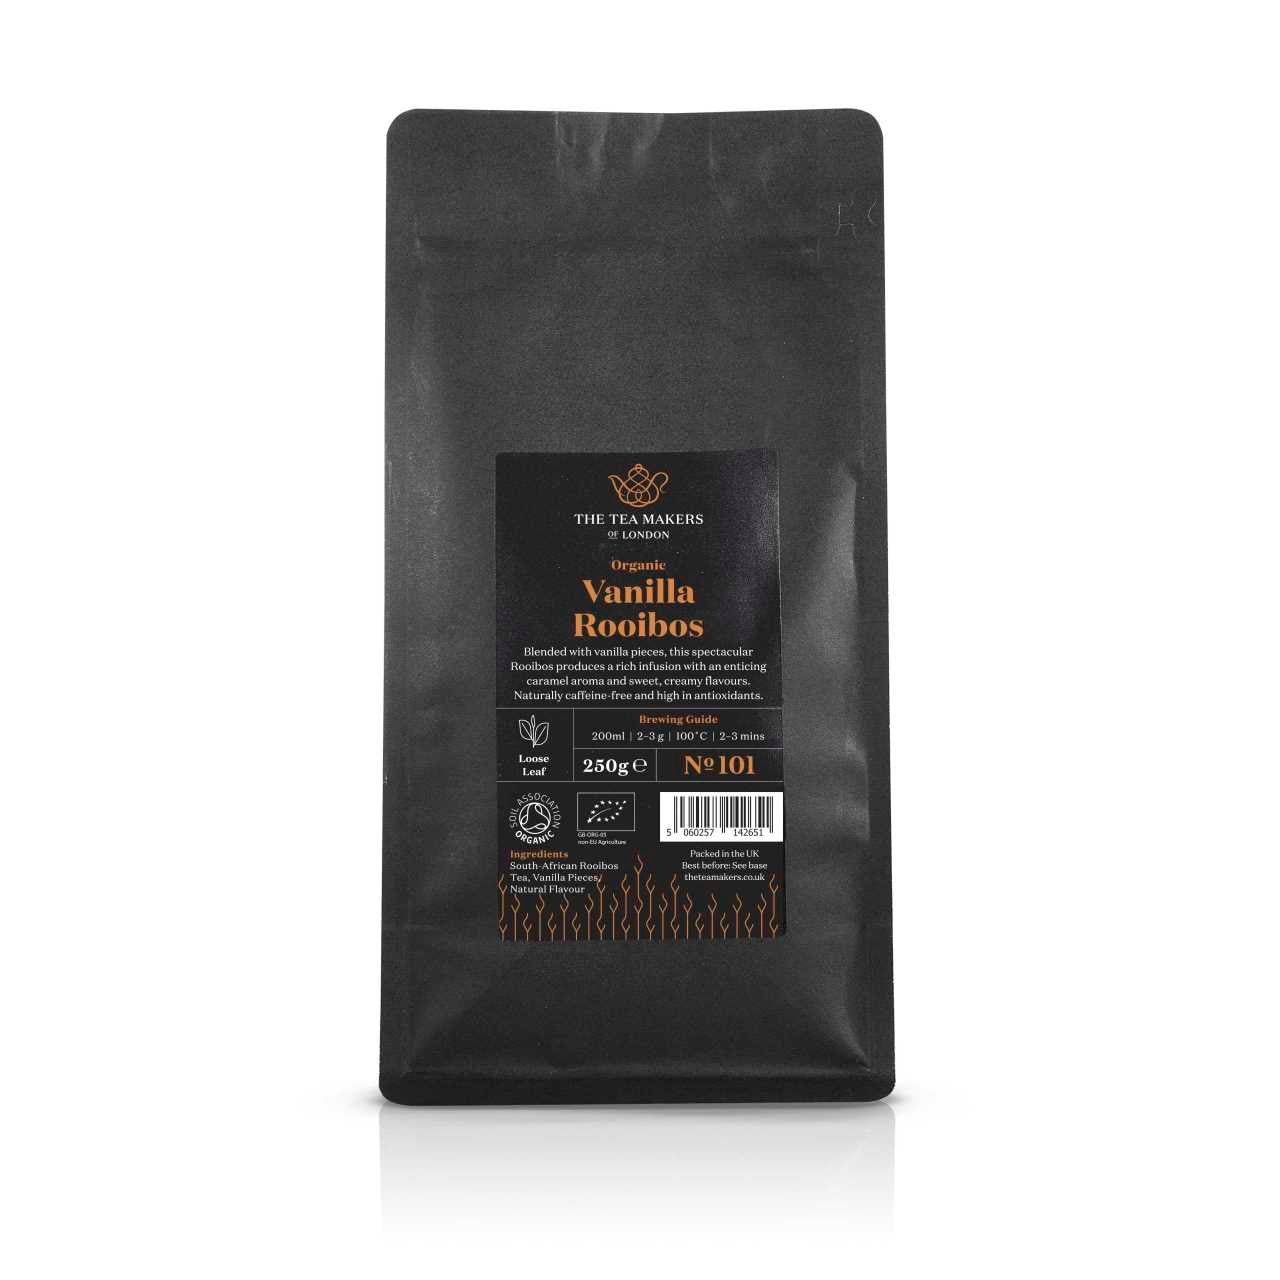 Organic Vanilla Rooibos Loose Leaf Tea 250g Pack